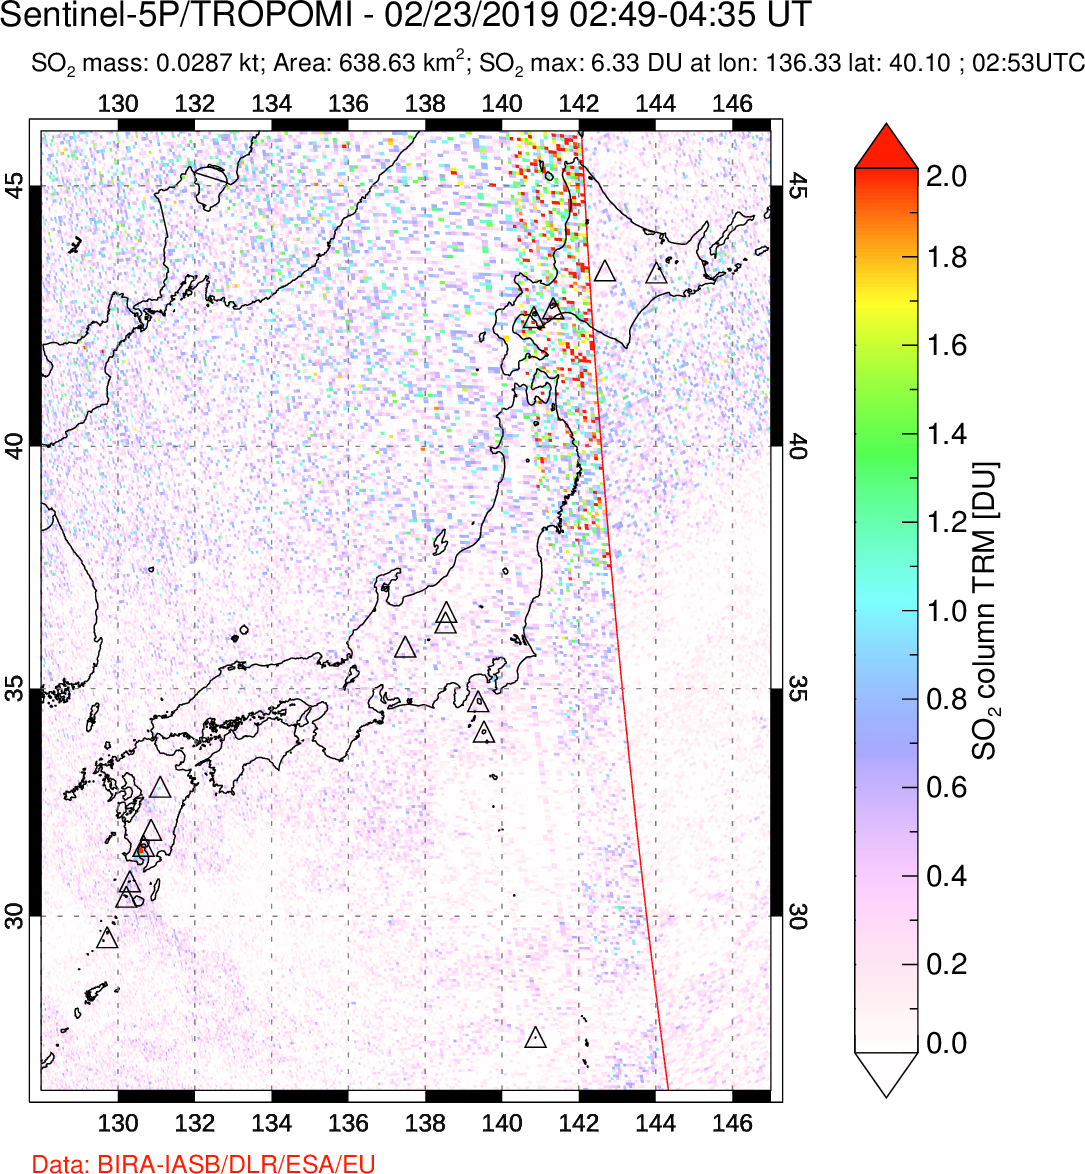 A sulfur dioxide image over Japan on Feb 23, 2019.